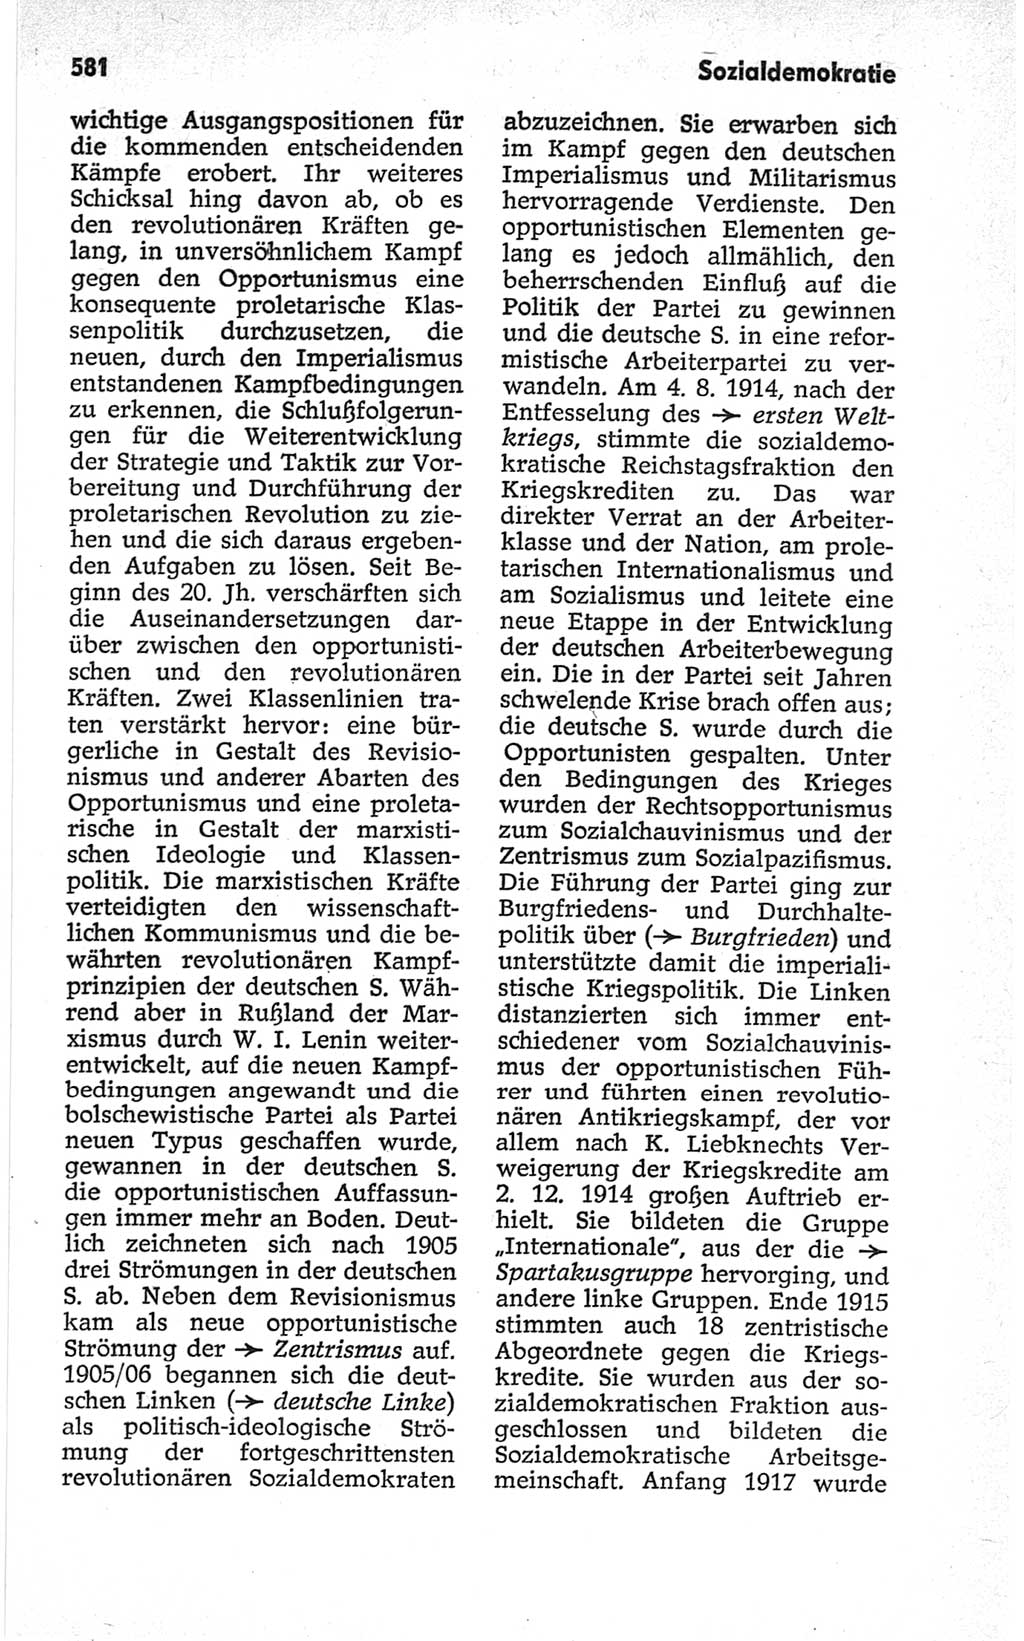 Kleines politisches Wörterbuch [Deutsche Demokratische Republik (DDR)] 1967, Seite 581 (Kl. pol. Wb. DDR 1967, S. 581)